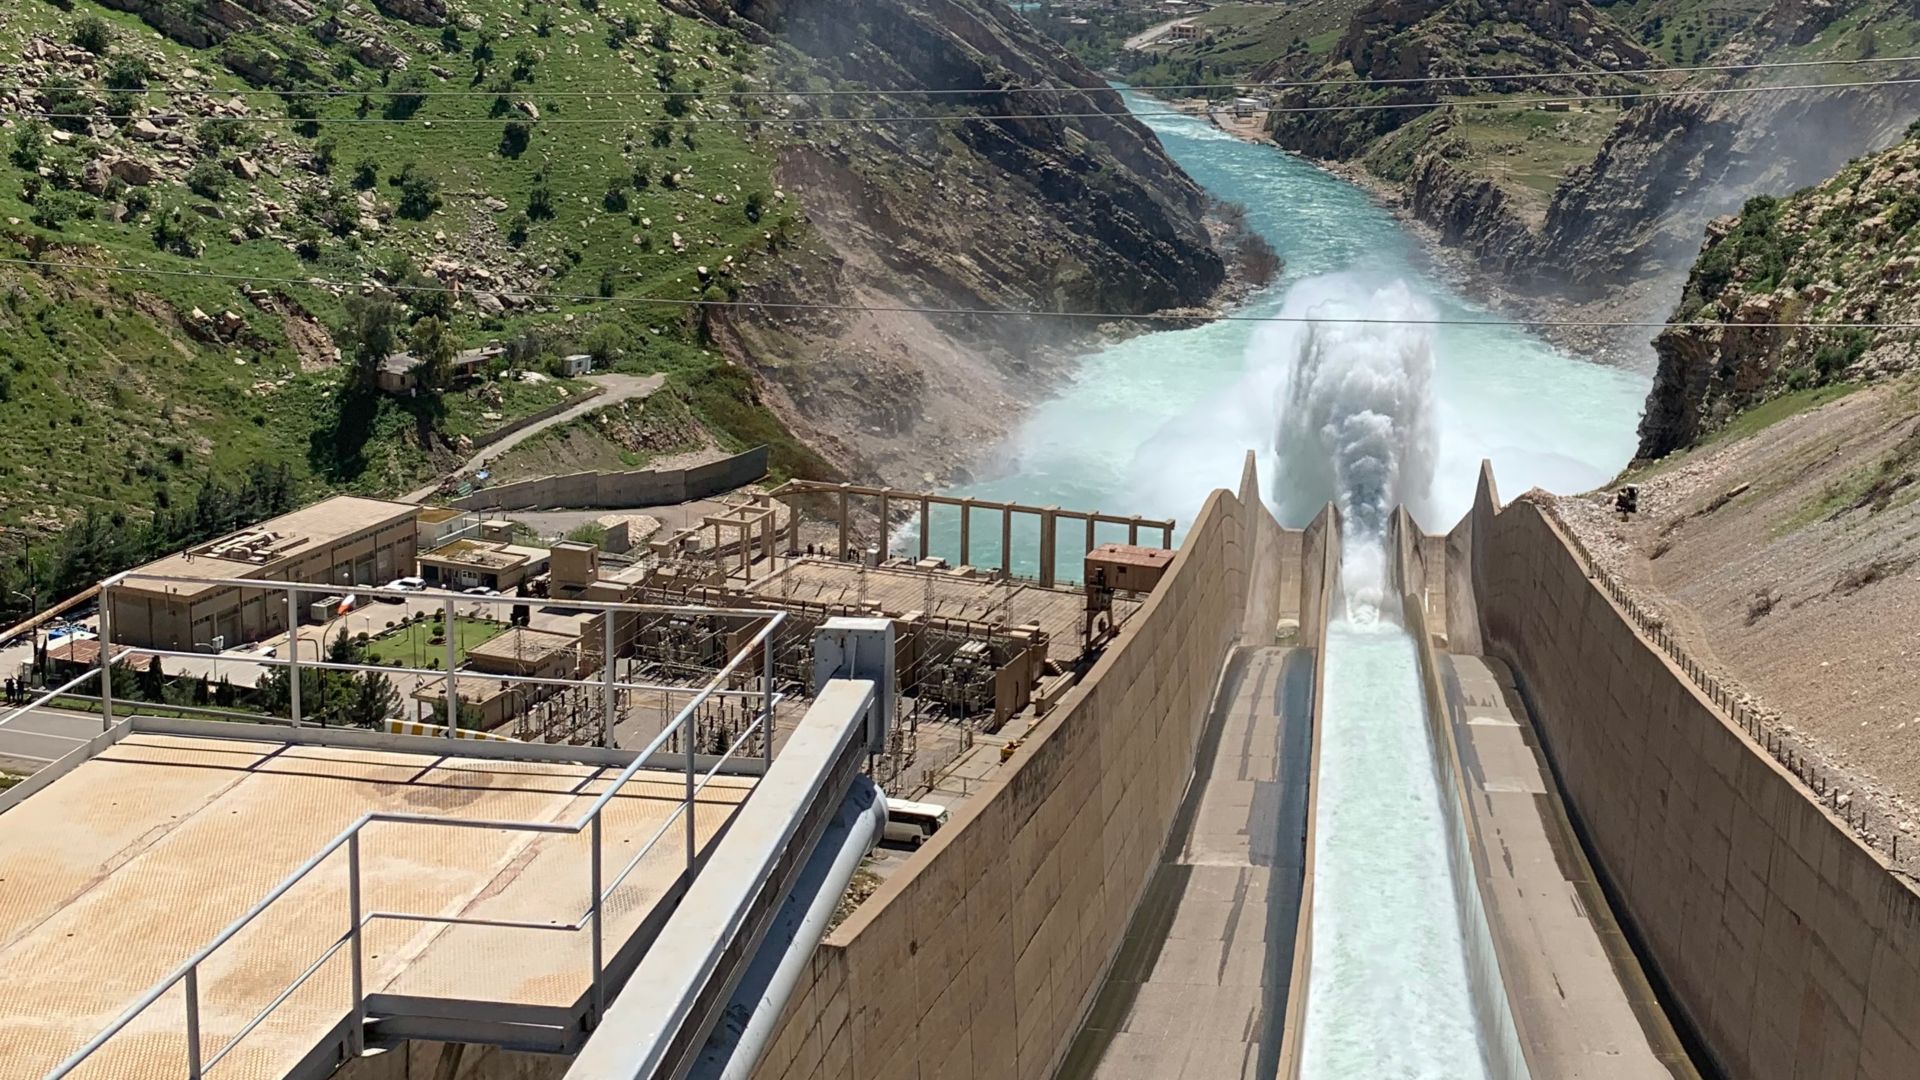 Dewana dam in Darbandikhan, Iraq